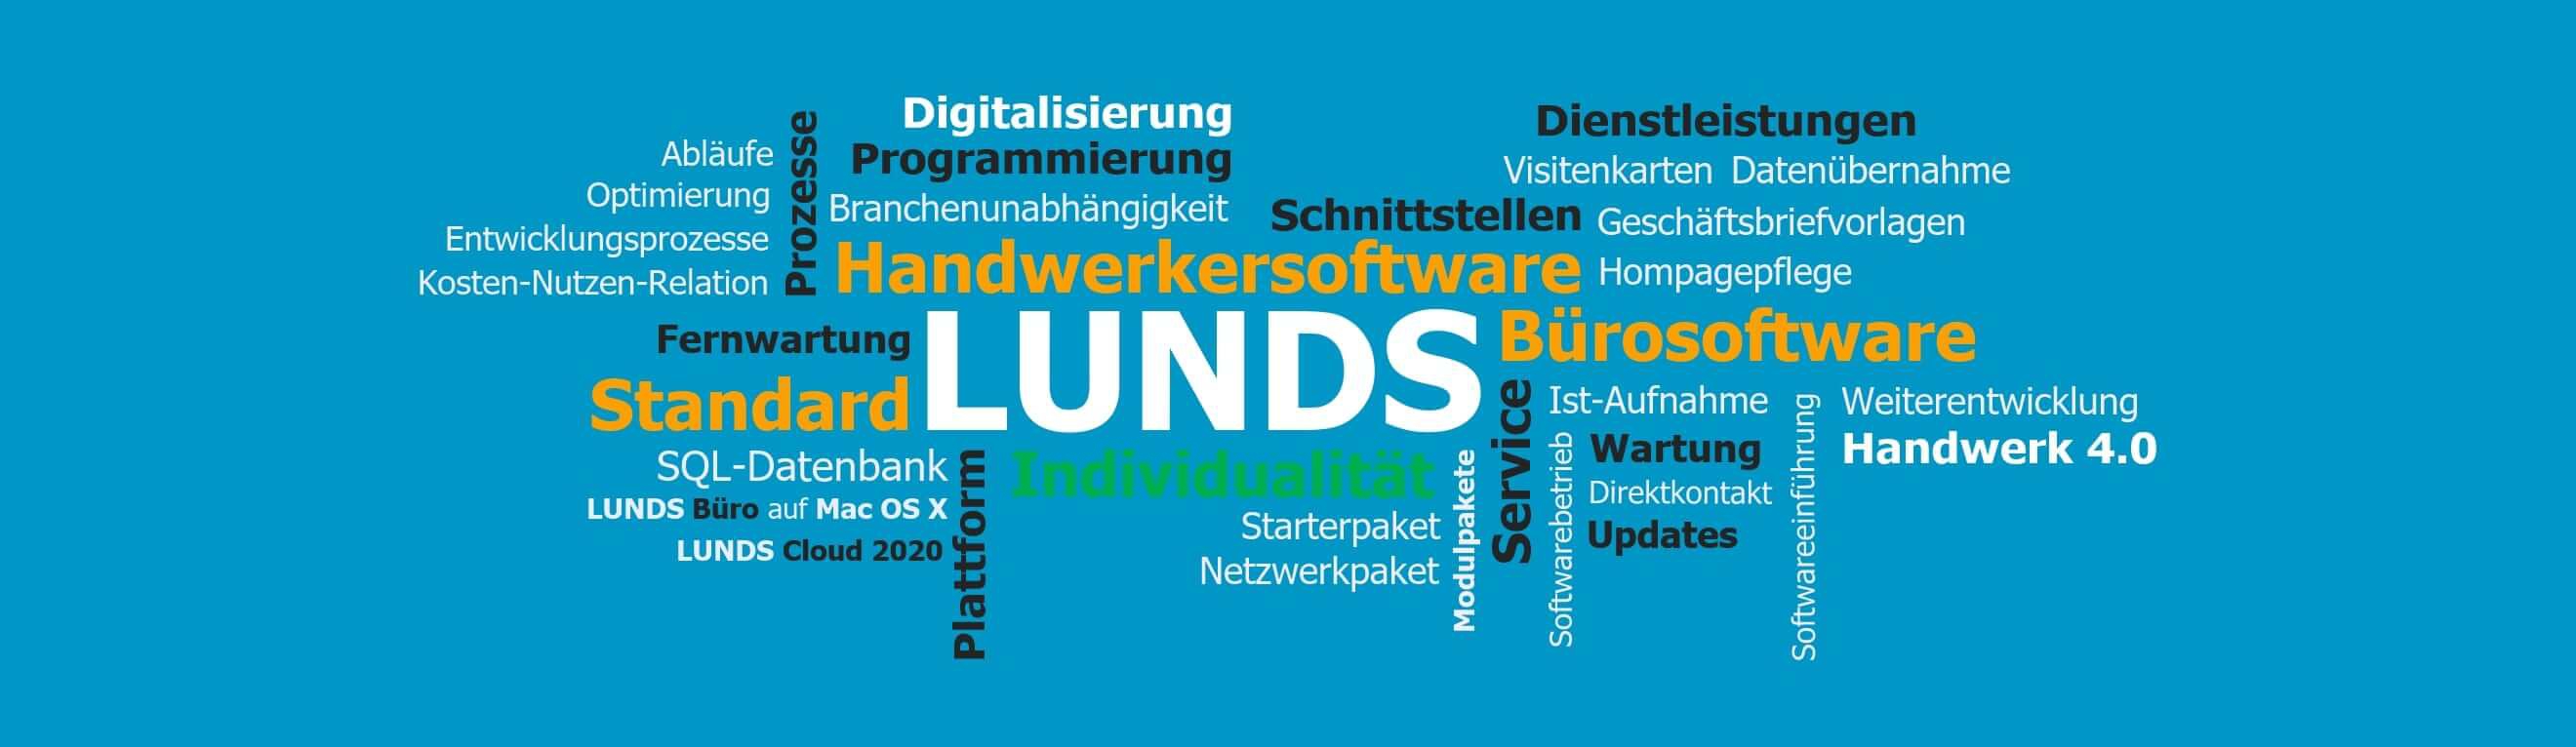 																																							Mitgestaltung der digitalen Welt Wir sind die LUNDS Software GmbH:Vertrieb und AnwendungsberatungProjektmanagement und SoftwareentwicklungMarketing und Digitalisierung im Handwerksbereich	Ihre Ansprechpartner																																				